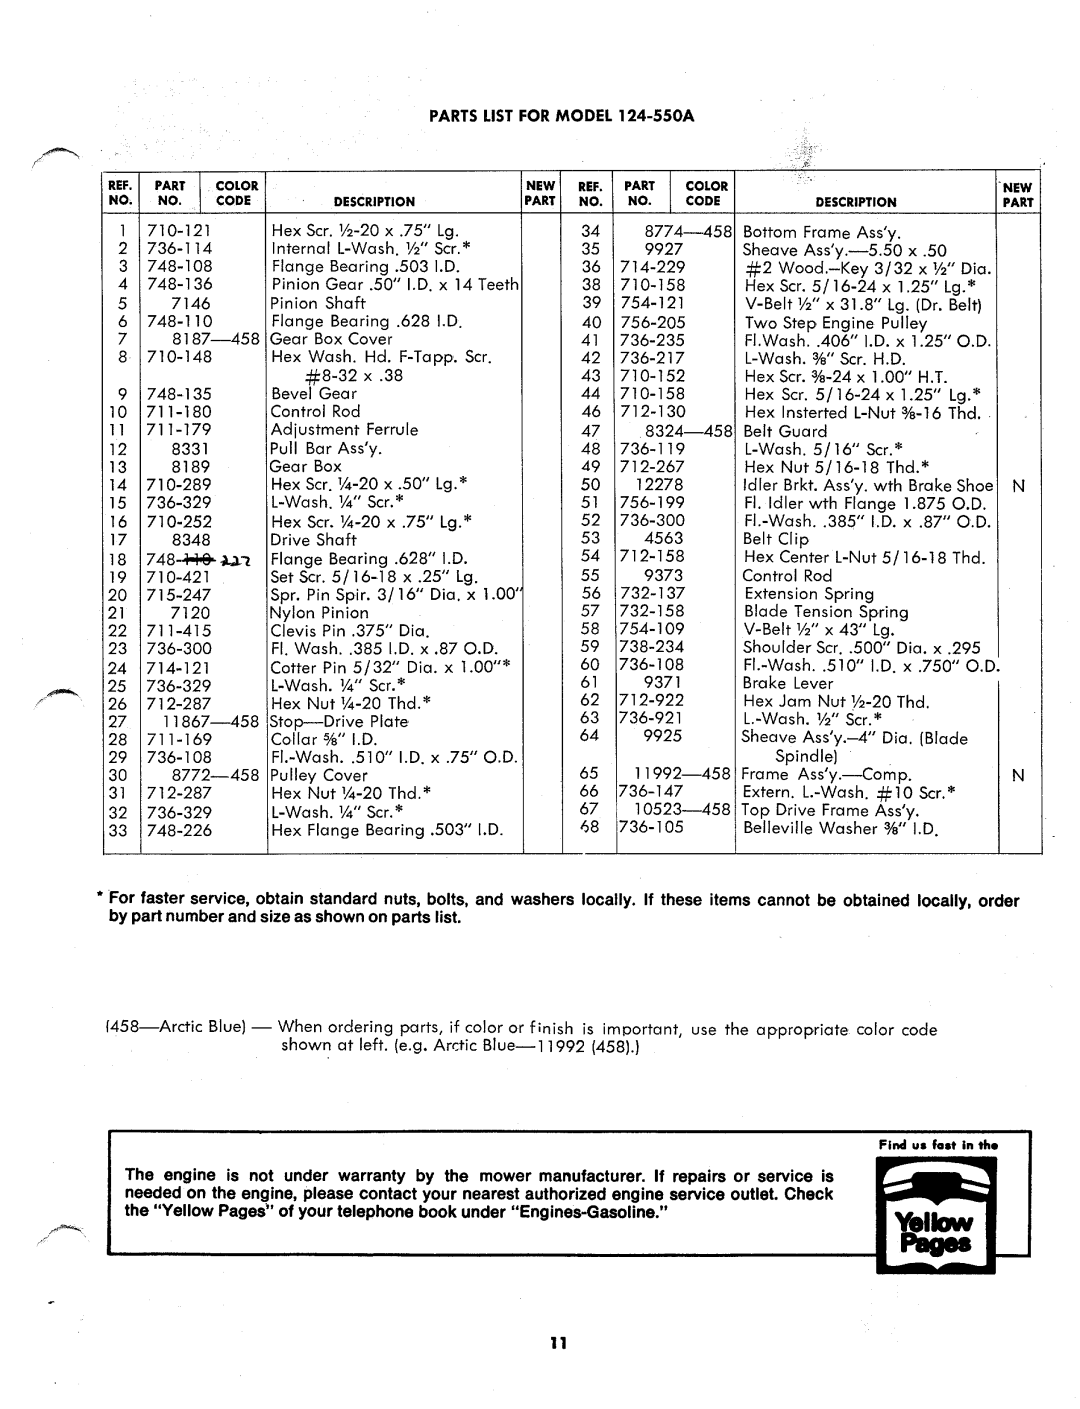 MTD 124-550A manual 